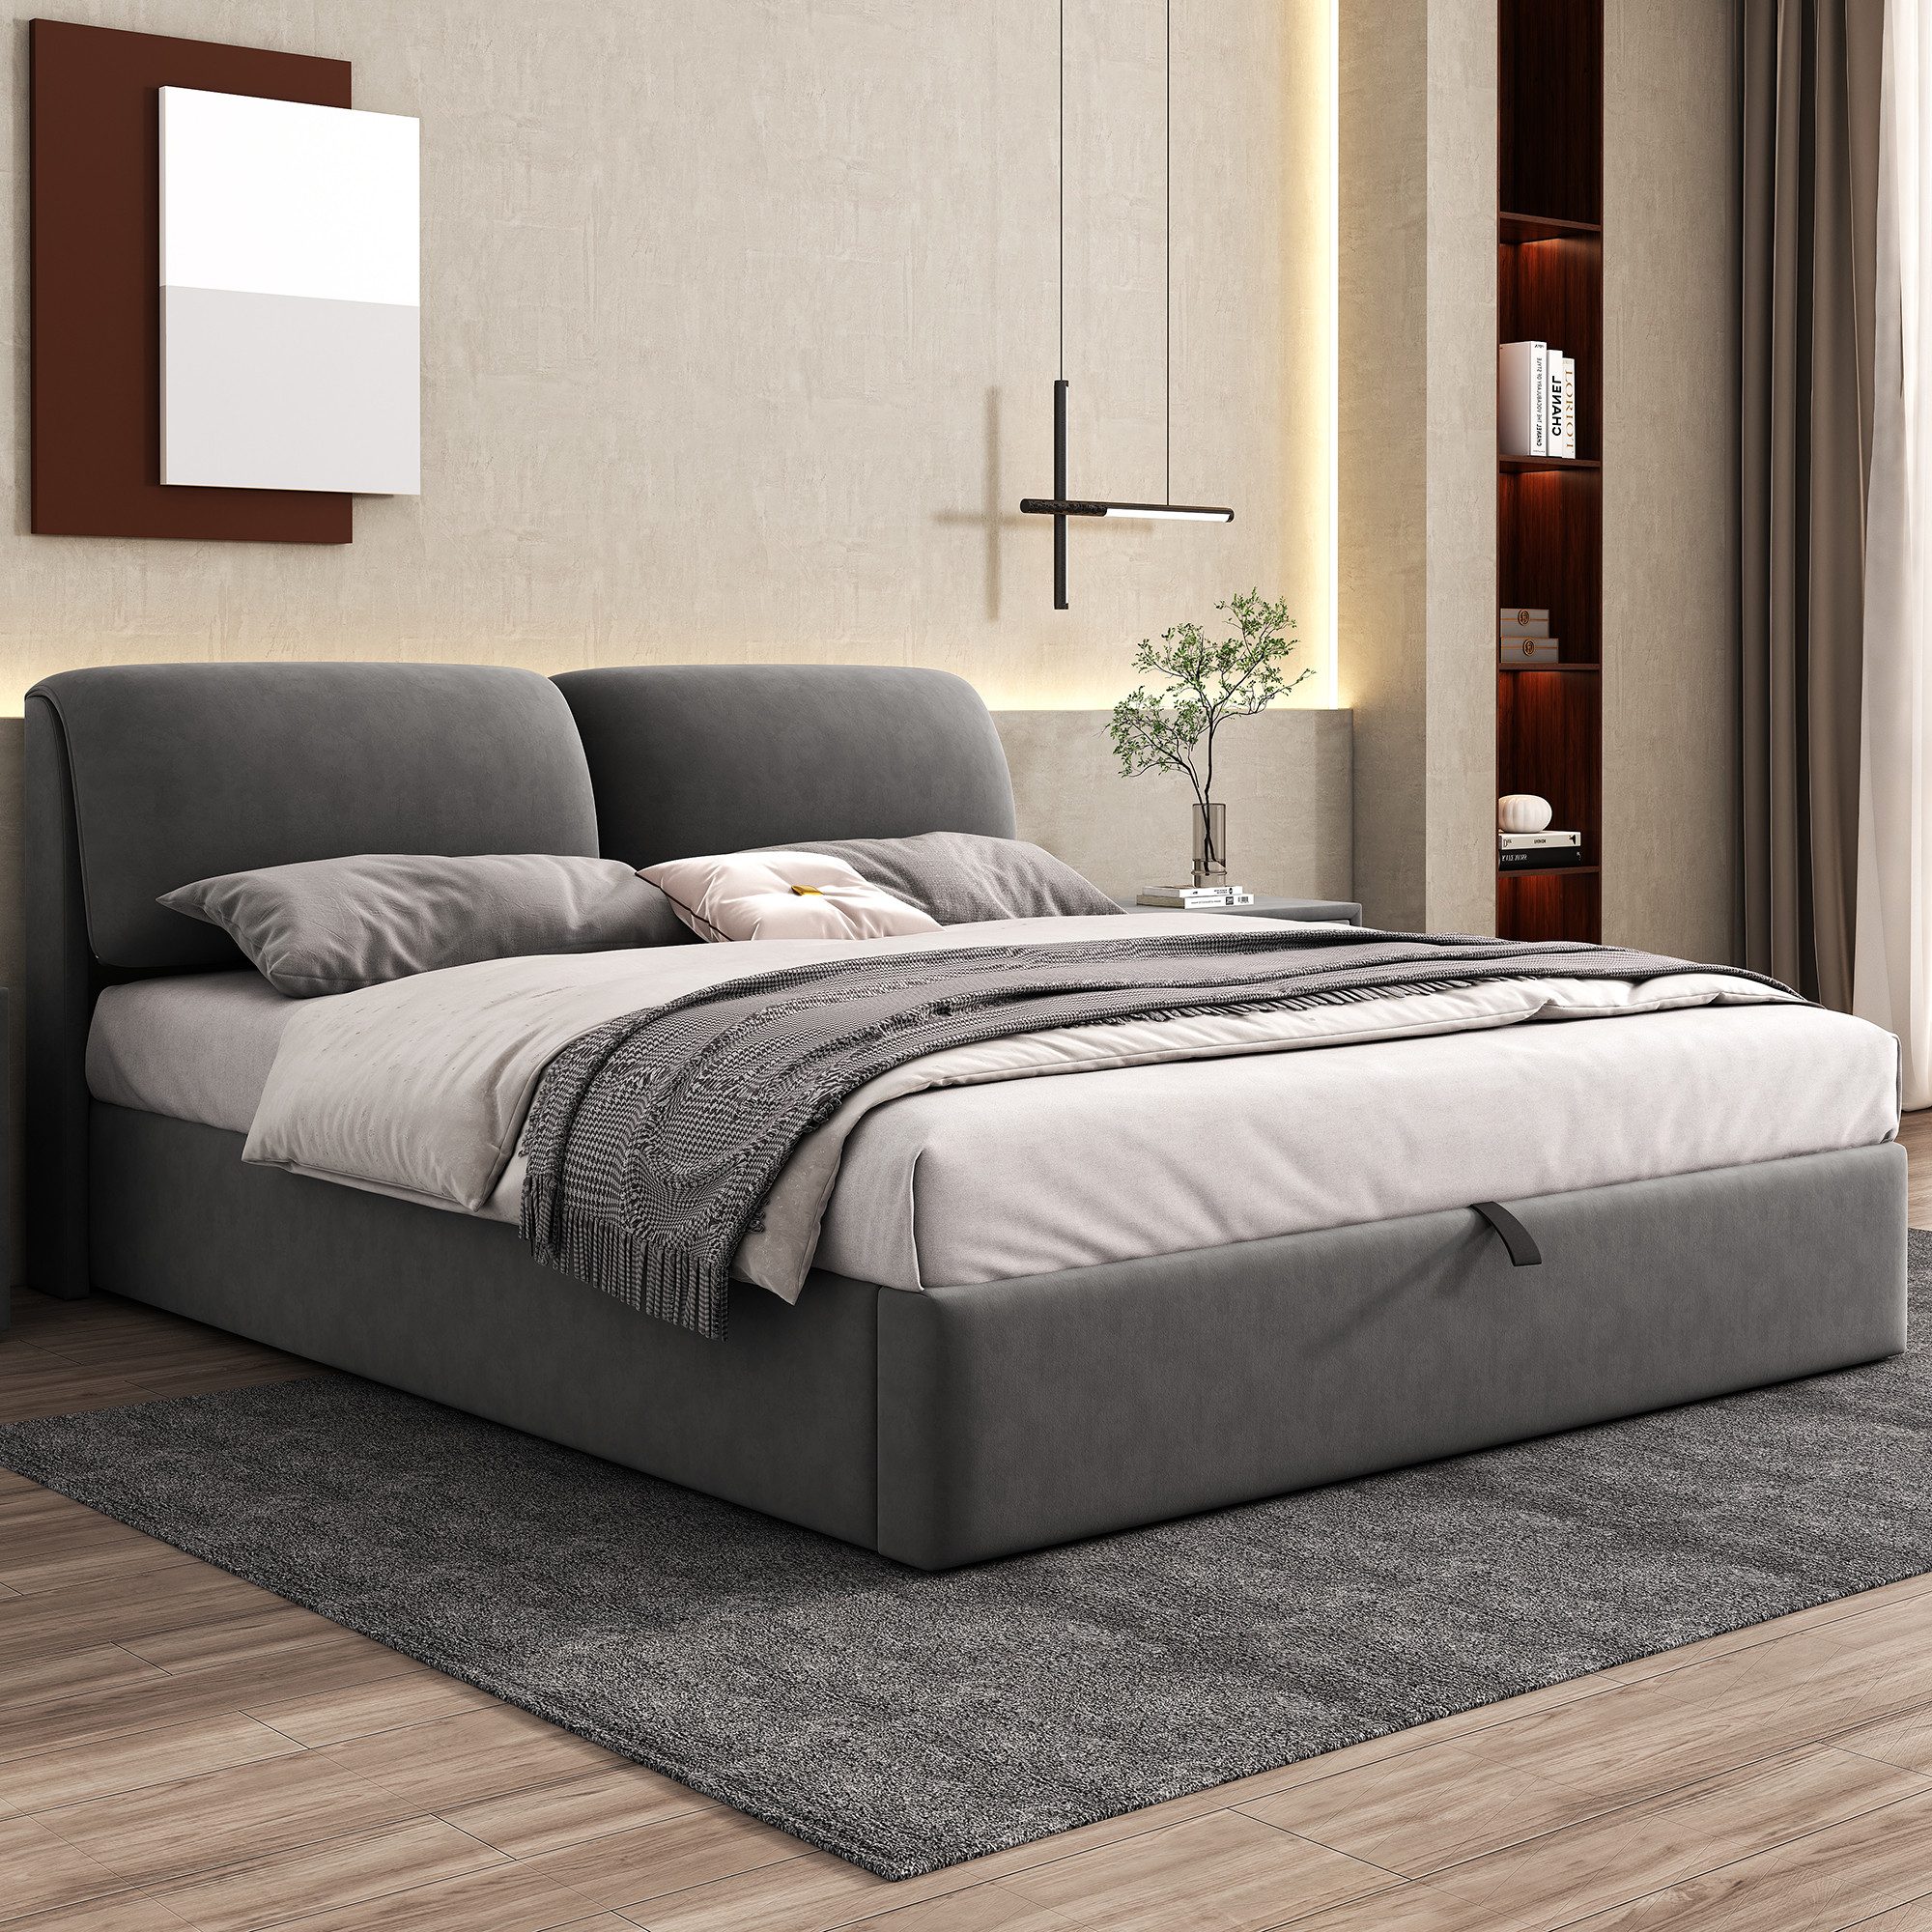 REDOM Polsterbett Hydraulisches Bett (180*200cm), mit 3 Schubladen,Bettkasten zur Aufbewahrung, Lattenrost mit Kopfteil